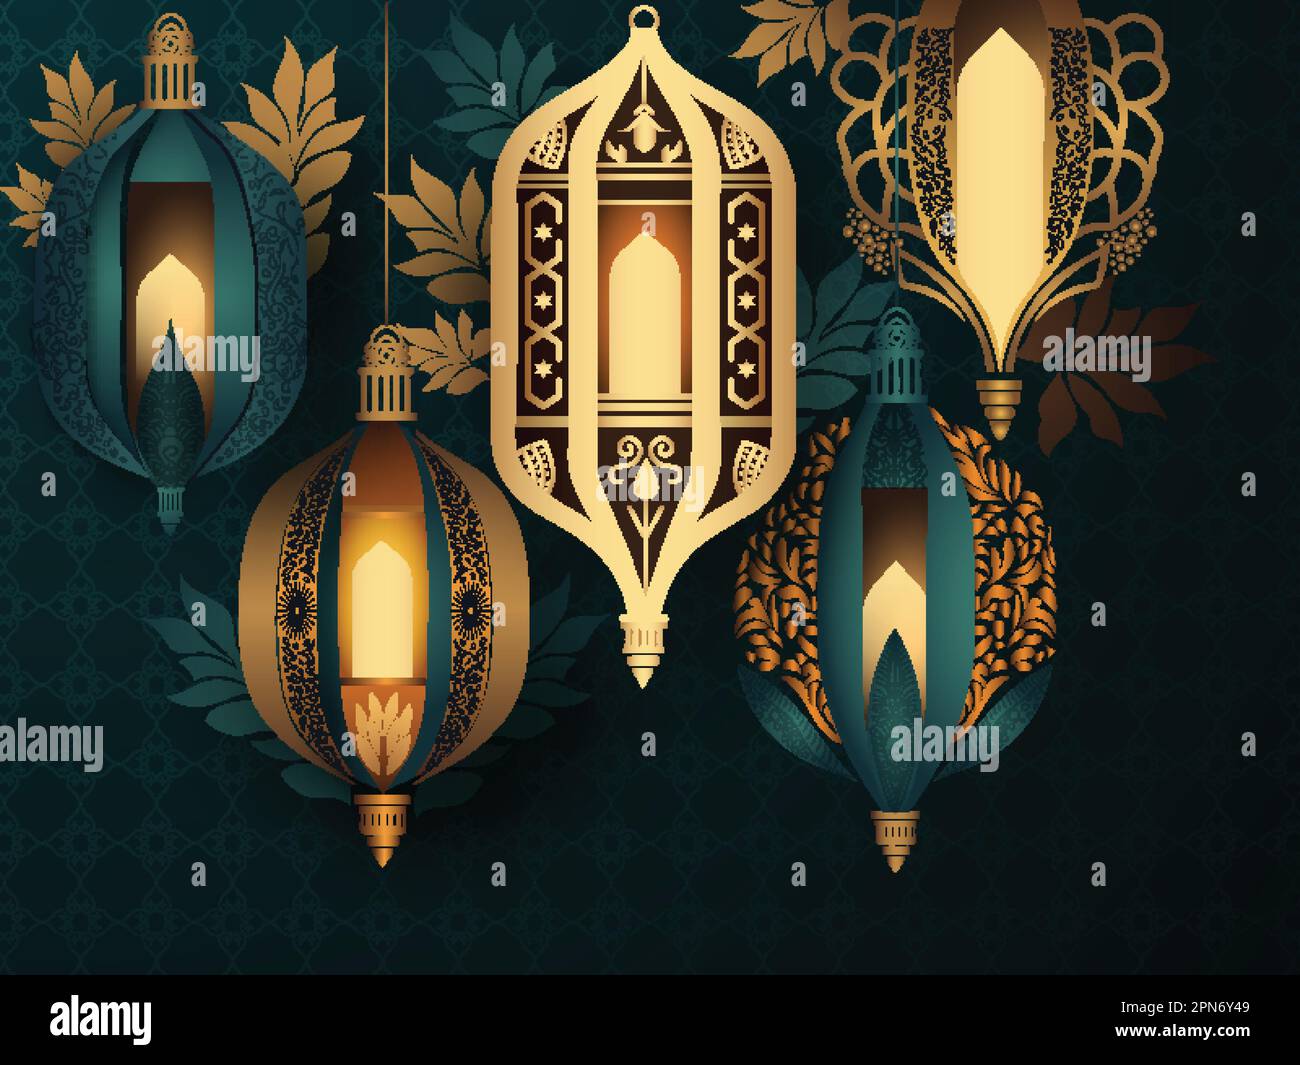 Des lampes arabes dorées et bleues sarcelle sont accrolées à des feuilles décorées de motifs islamiques. Illustration de Vecteur